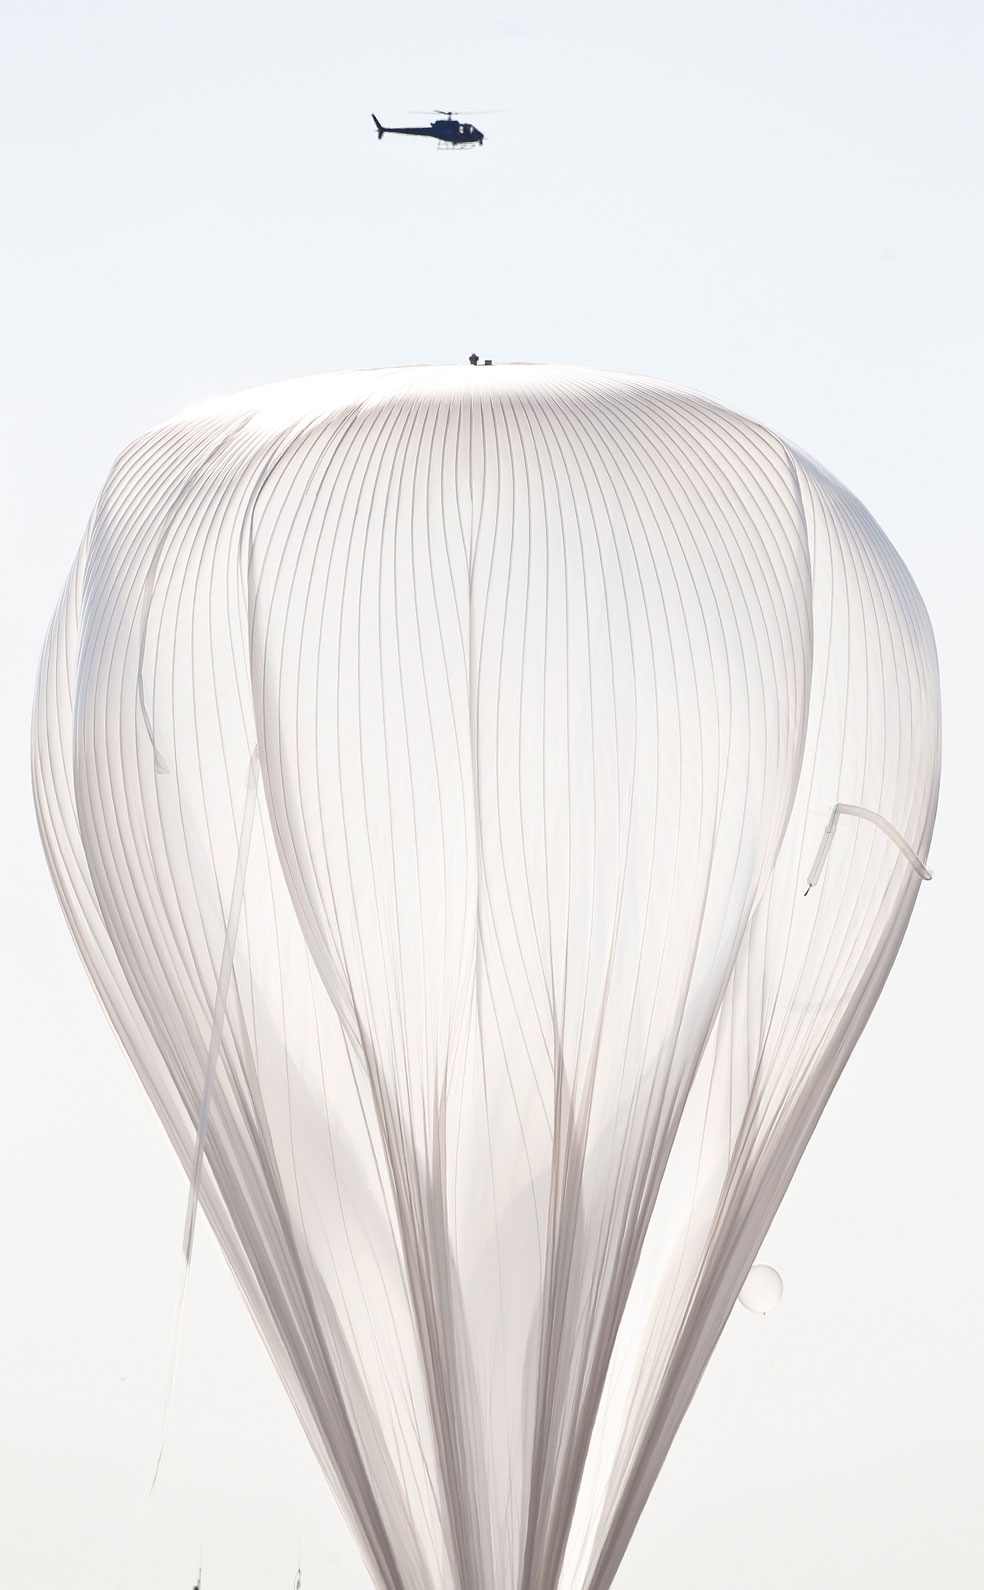 огромный воздушный шар, фото